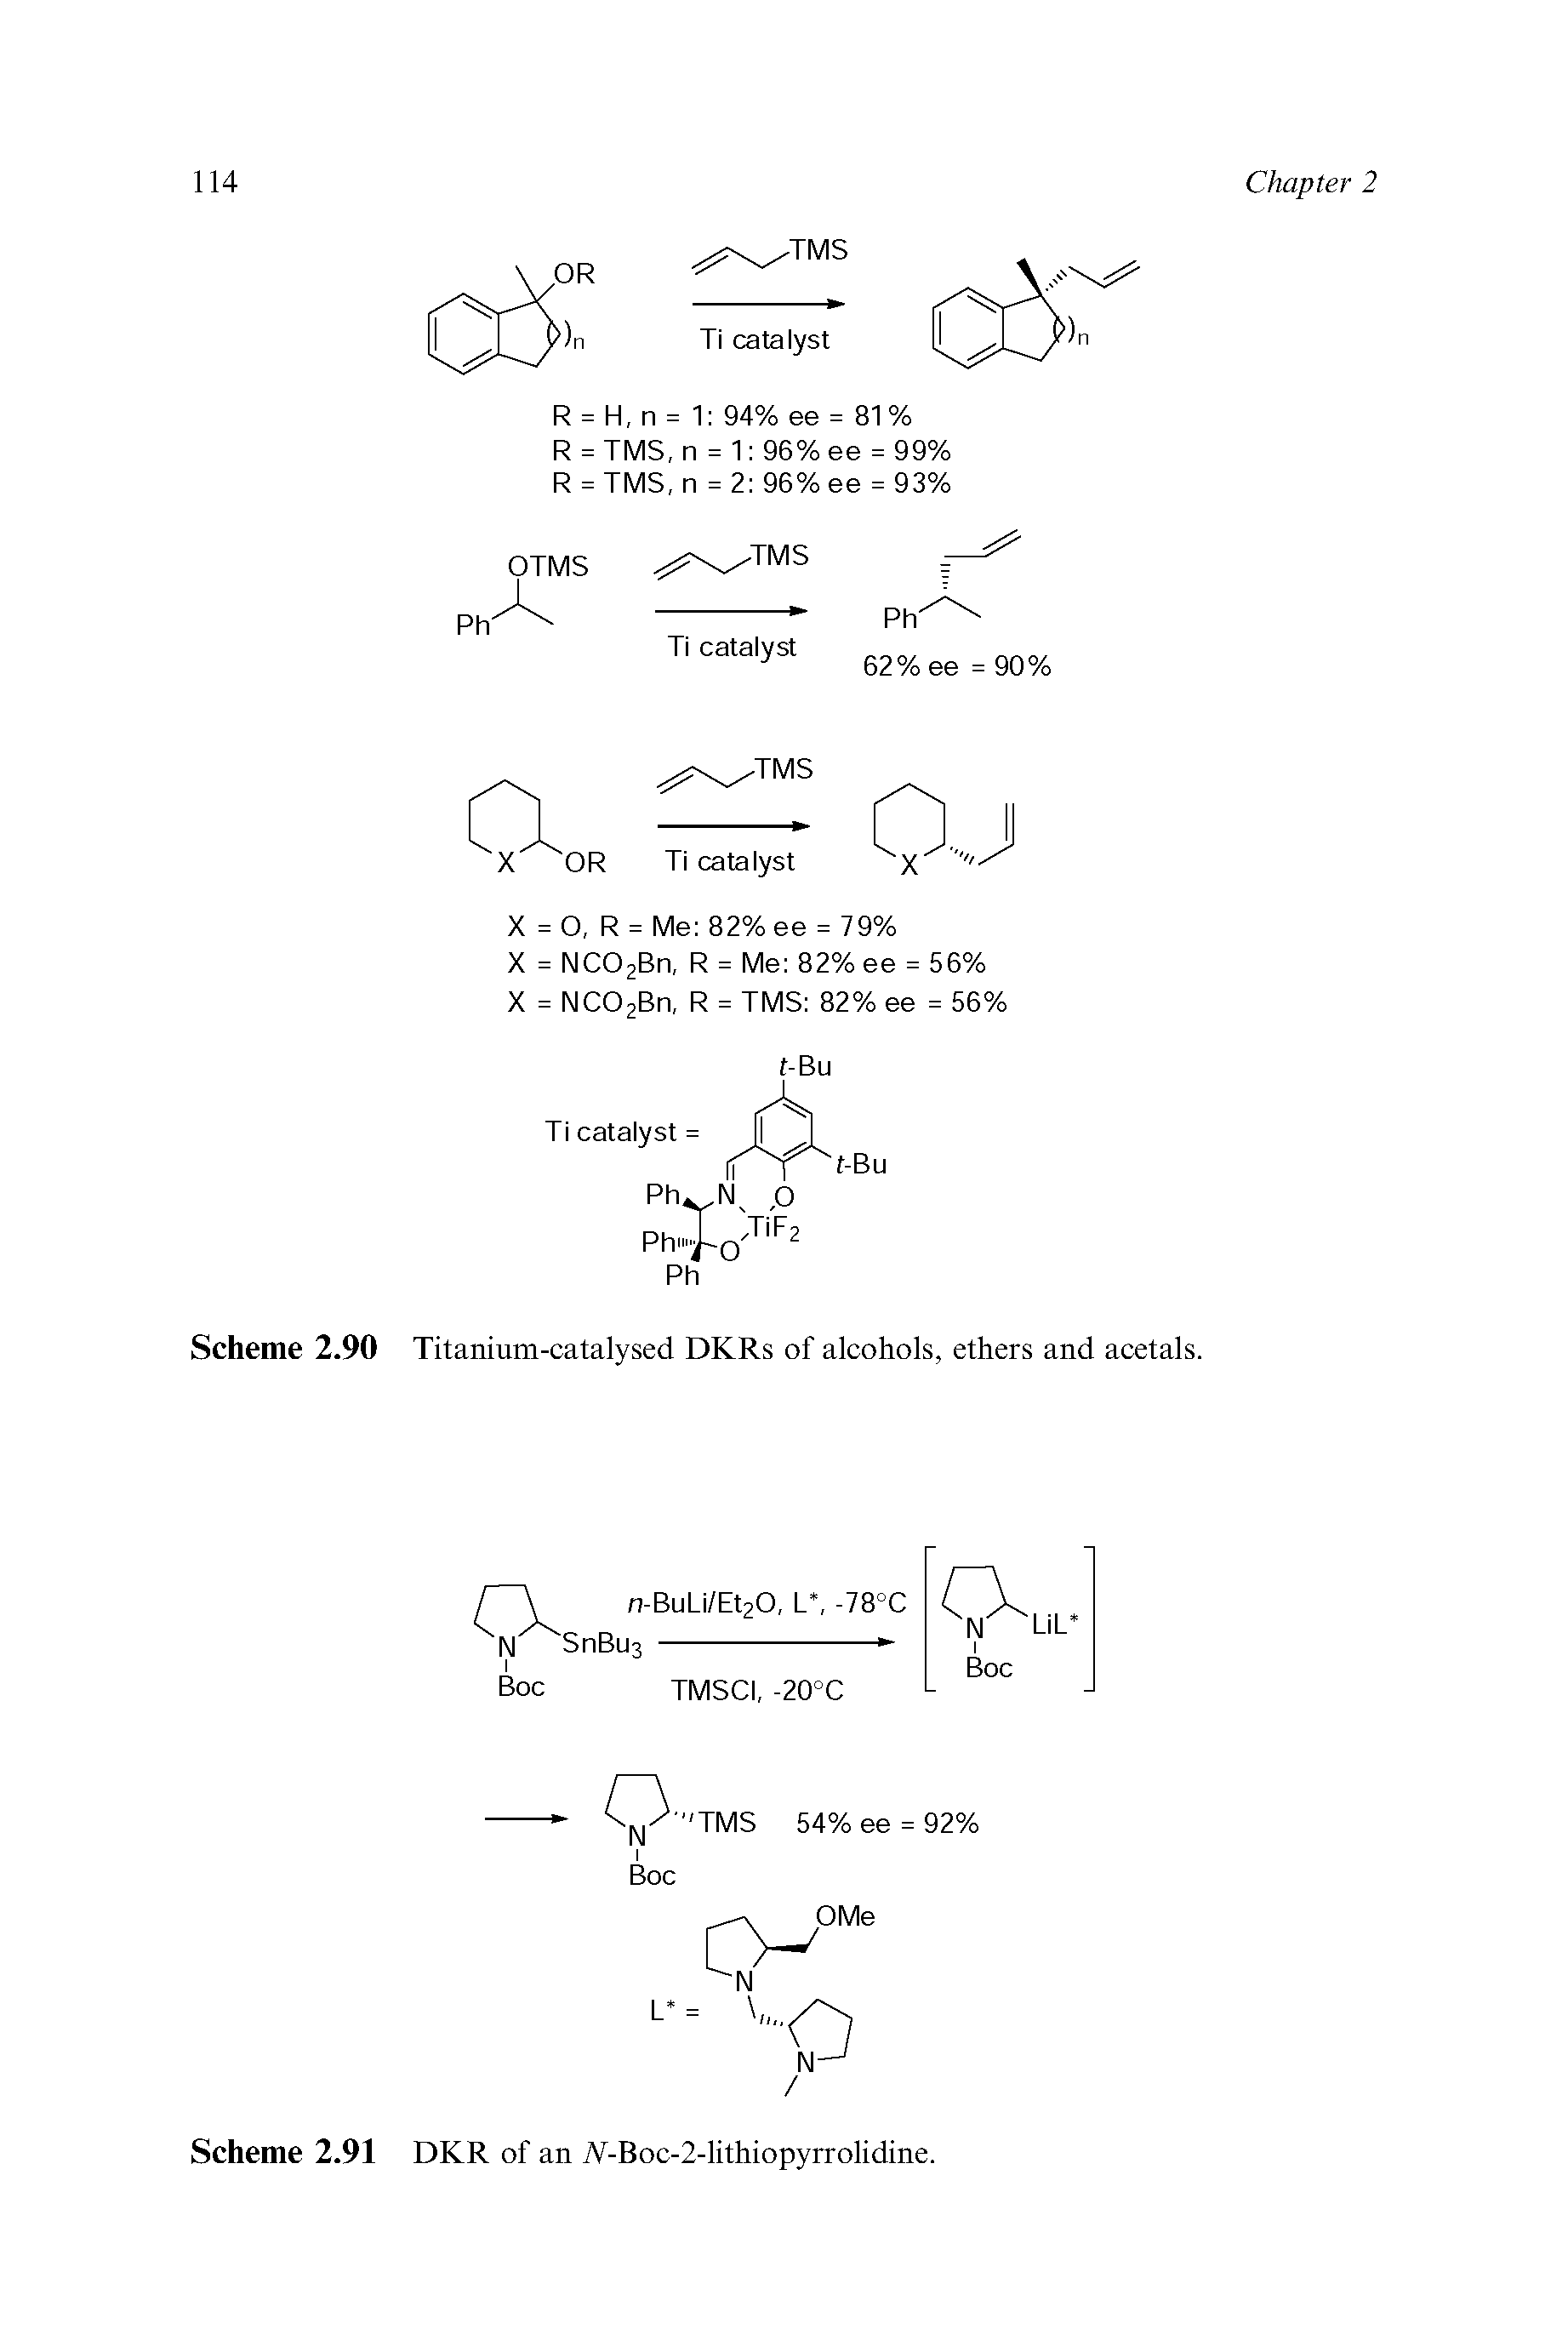 Scheme 2.90 Titanium-catalysed DKRs of alcohols, ethers and acetals.